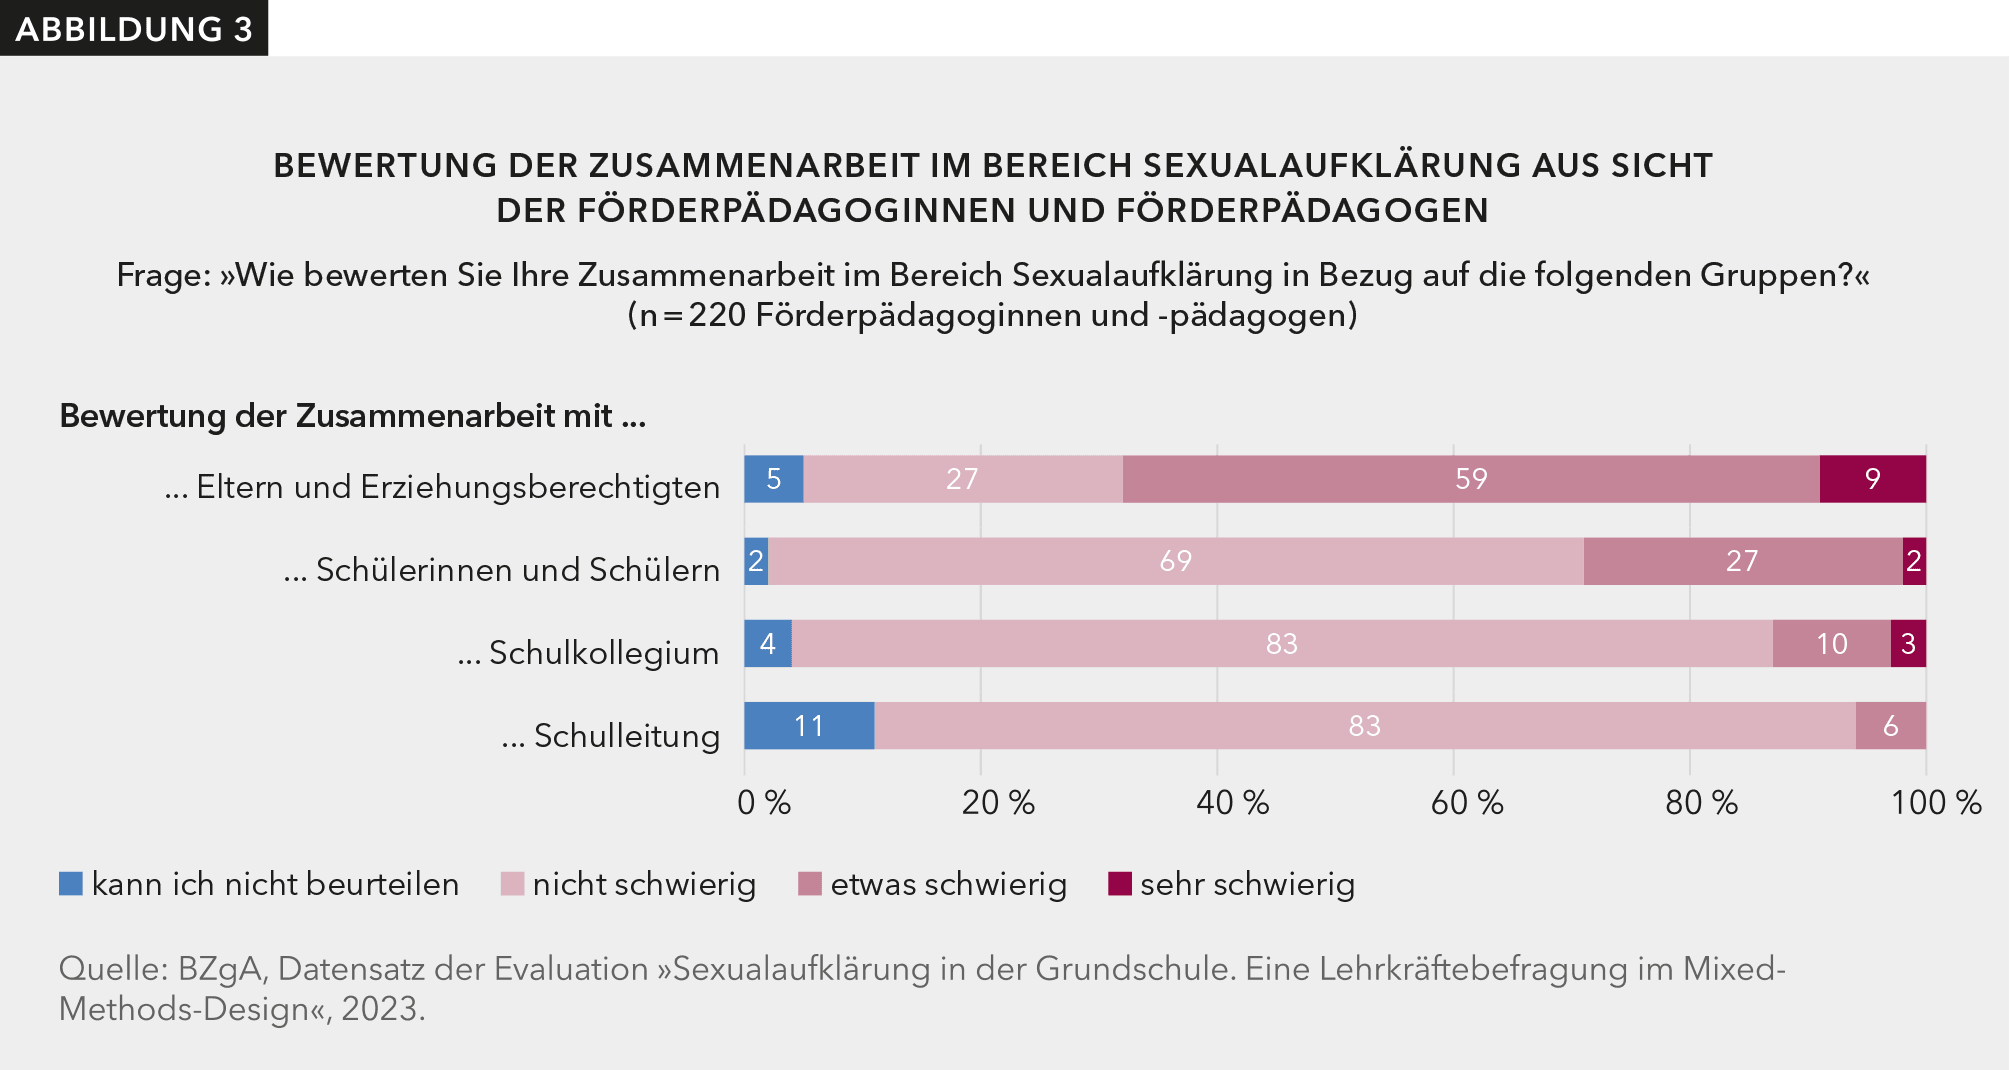 Abbildung 3 zeigt, wie die Förderpädagoginnen und -pädagogen die Zusammenarbeit im Bereich Sexualaufklärung bewerten. Insbesondere die Zusammenarbeit mit den Eltern bewerten 59 % als „etwas schwierig“.